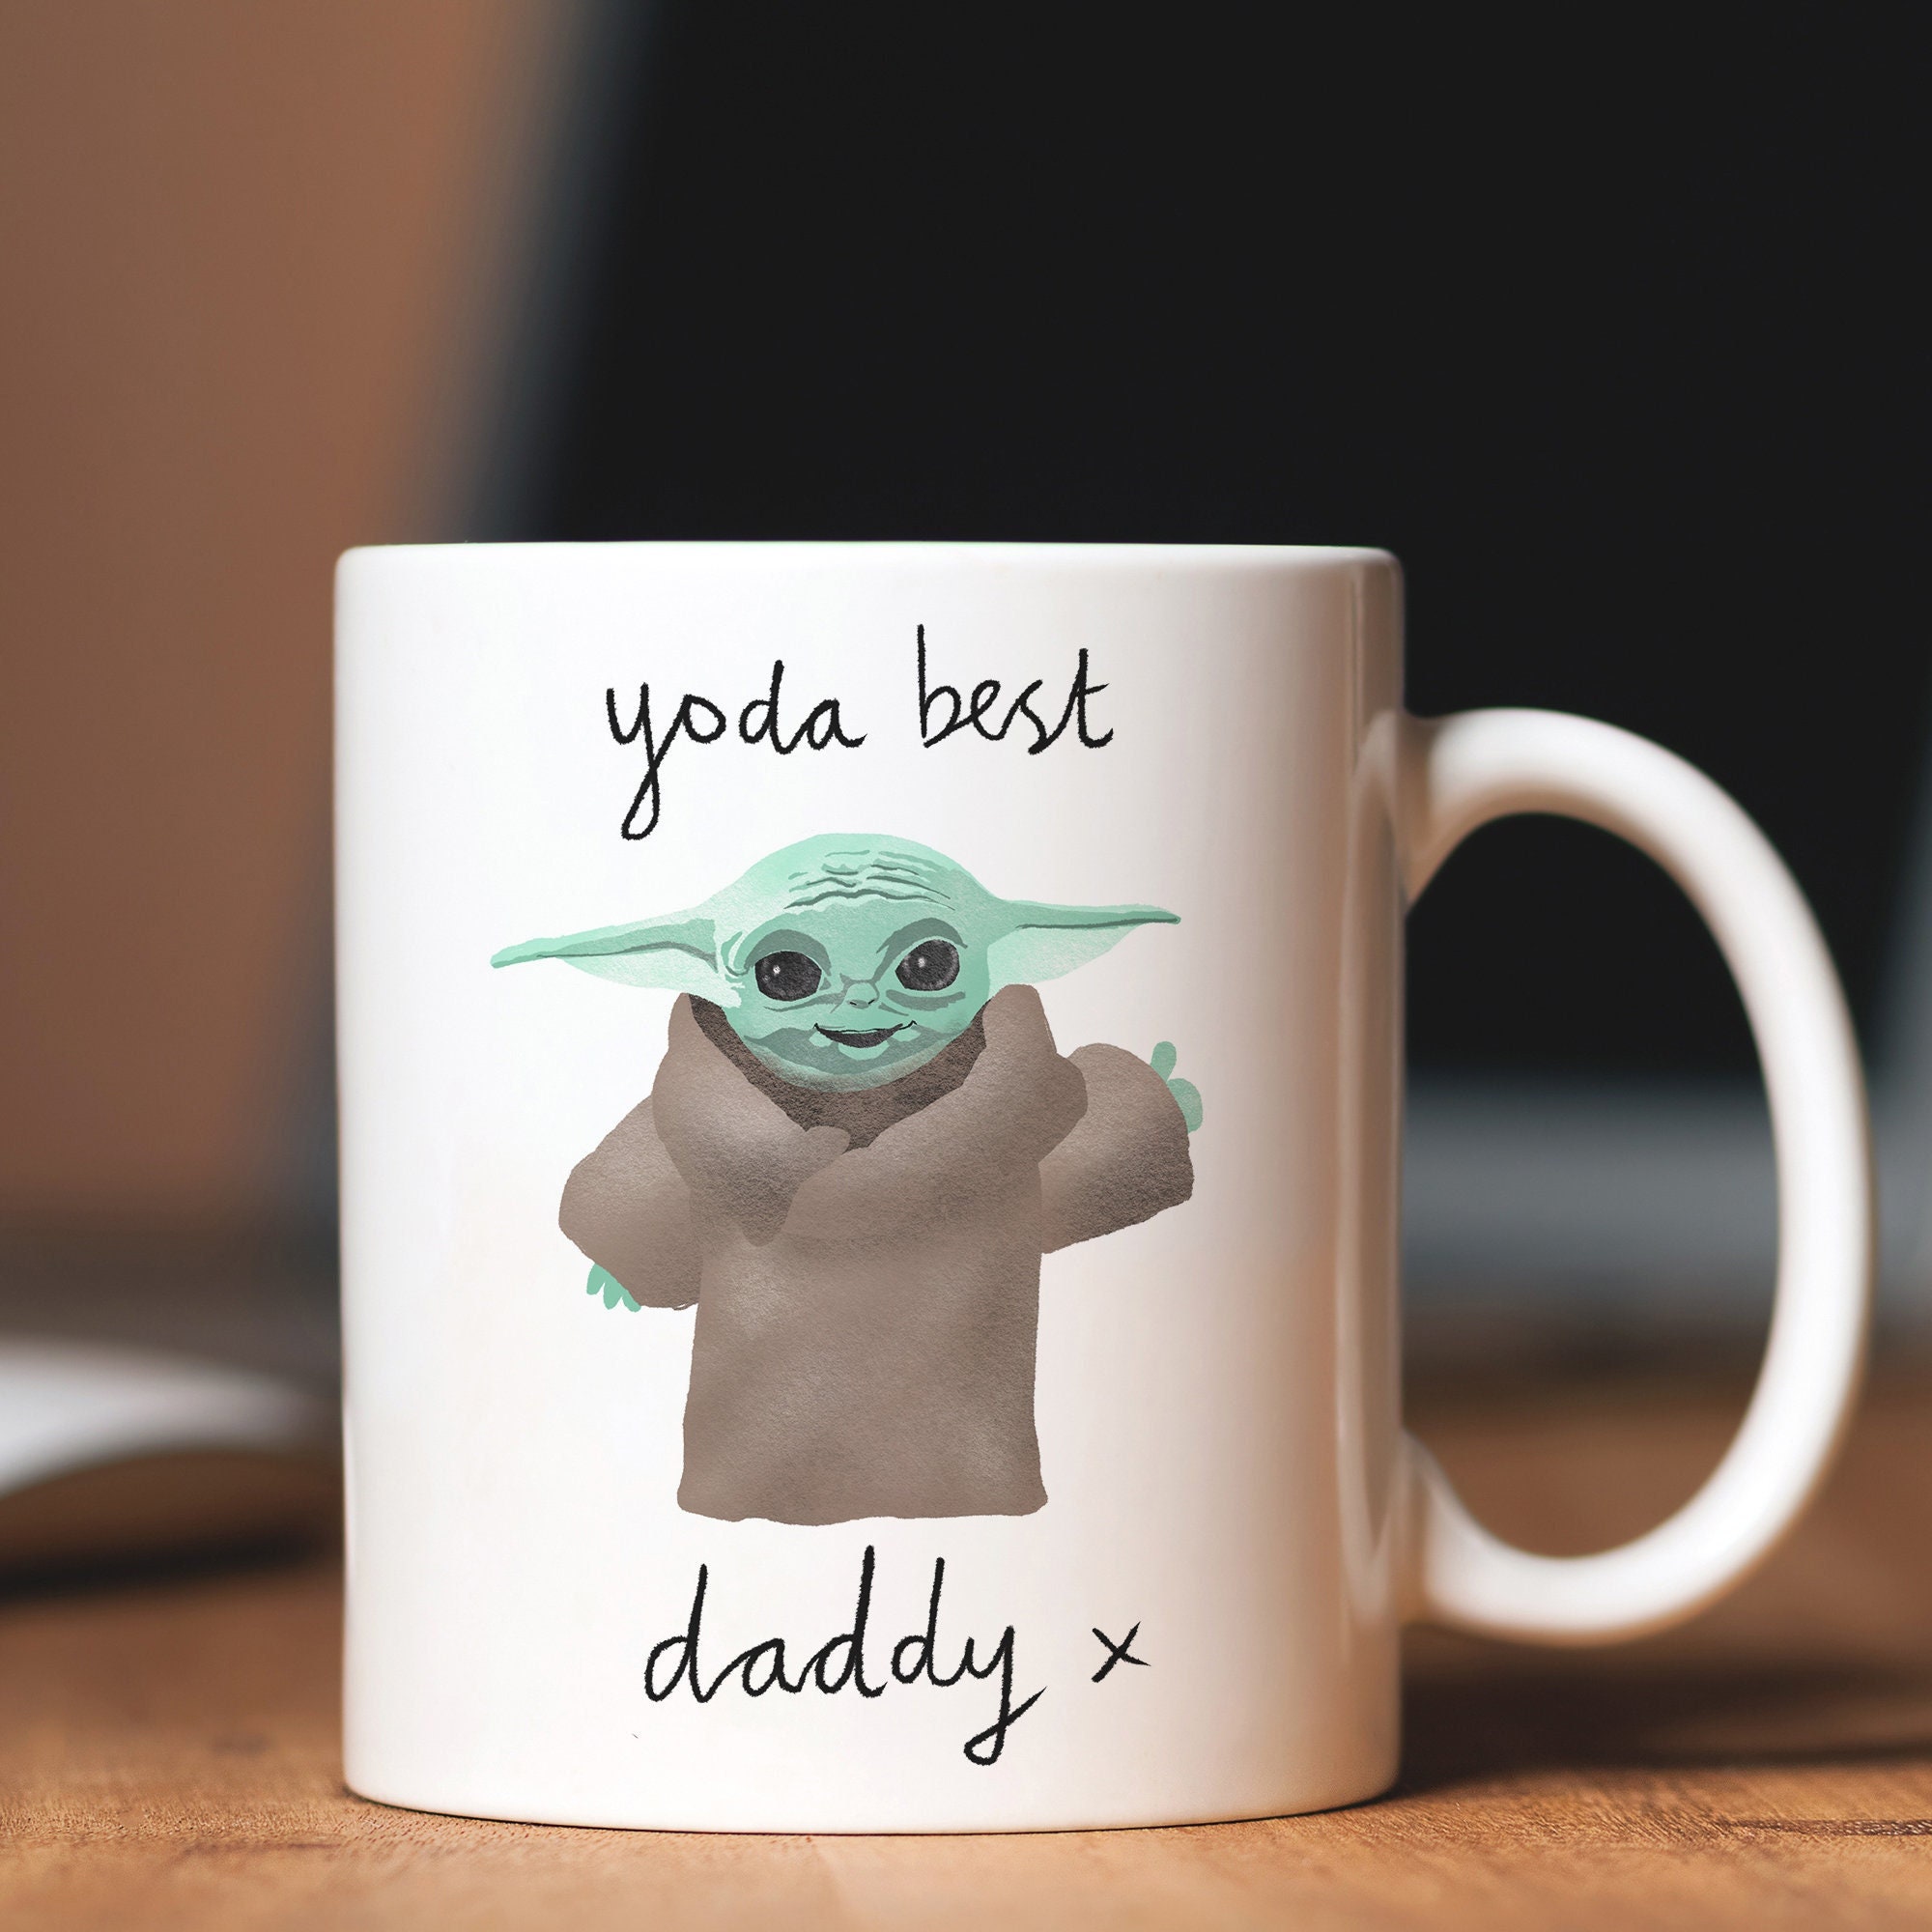  Yoda Best Mug - FathersDay Mugs for Dad Star Wars Dad